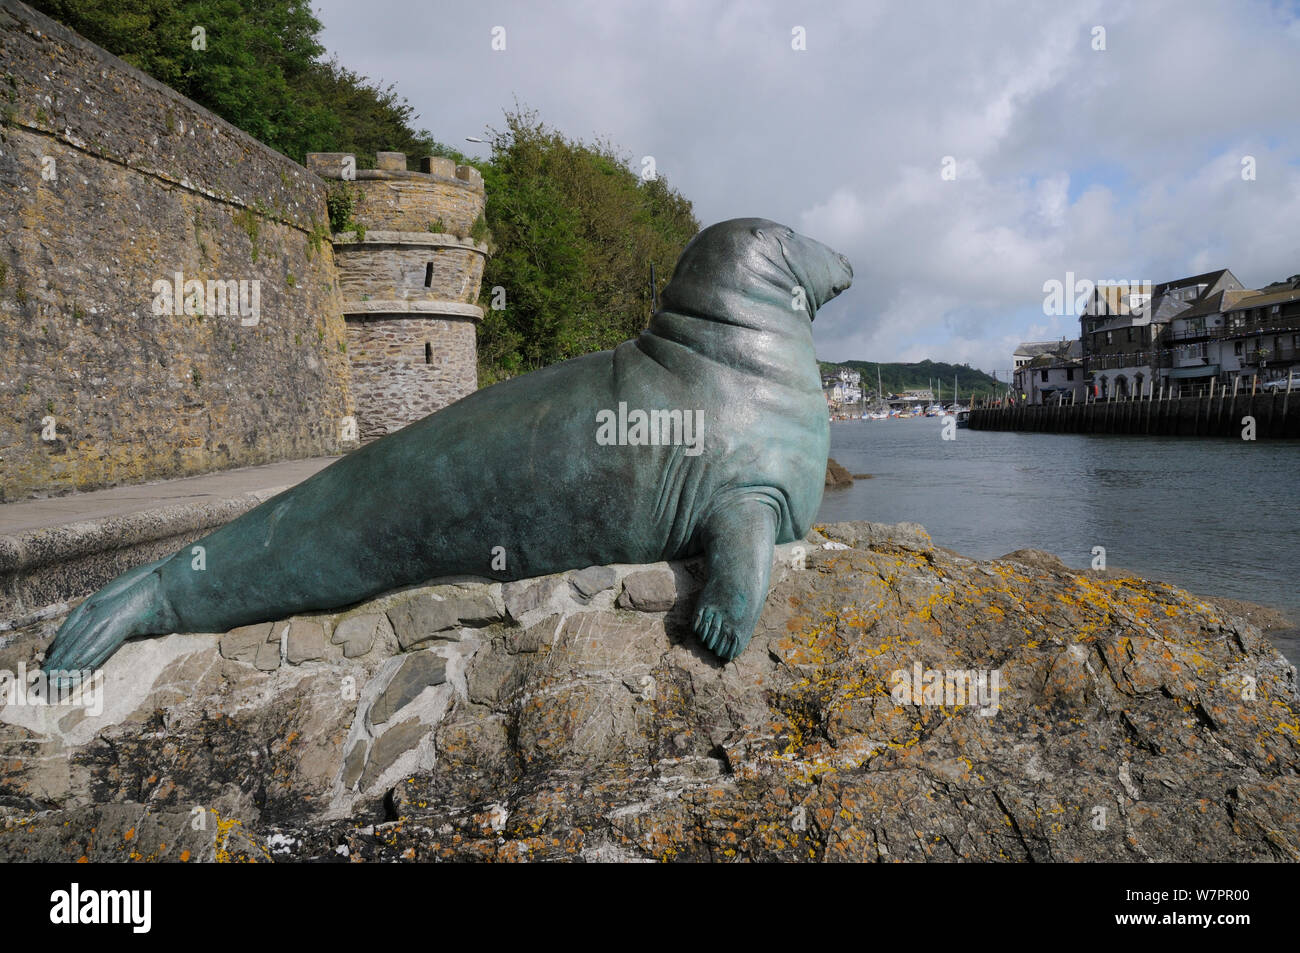 Estatua de bronce en memoria de 'Nelson' un toro junta gris que frecuentaban Looe isla y puerto, Looe, Cornwall, Reino Unido, junio de 2012 Foto de stock